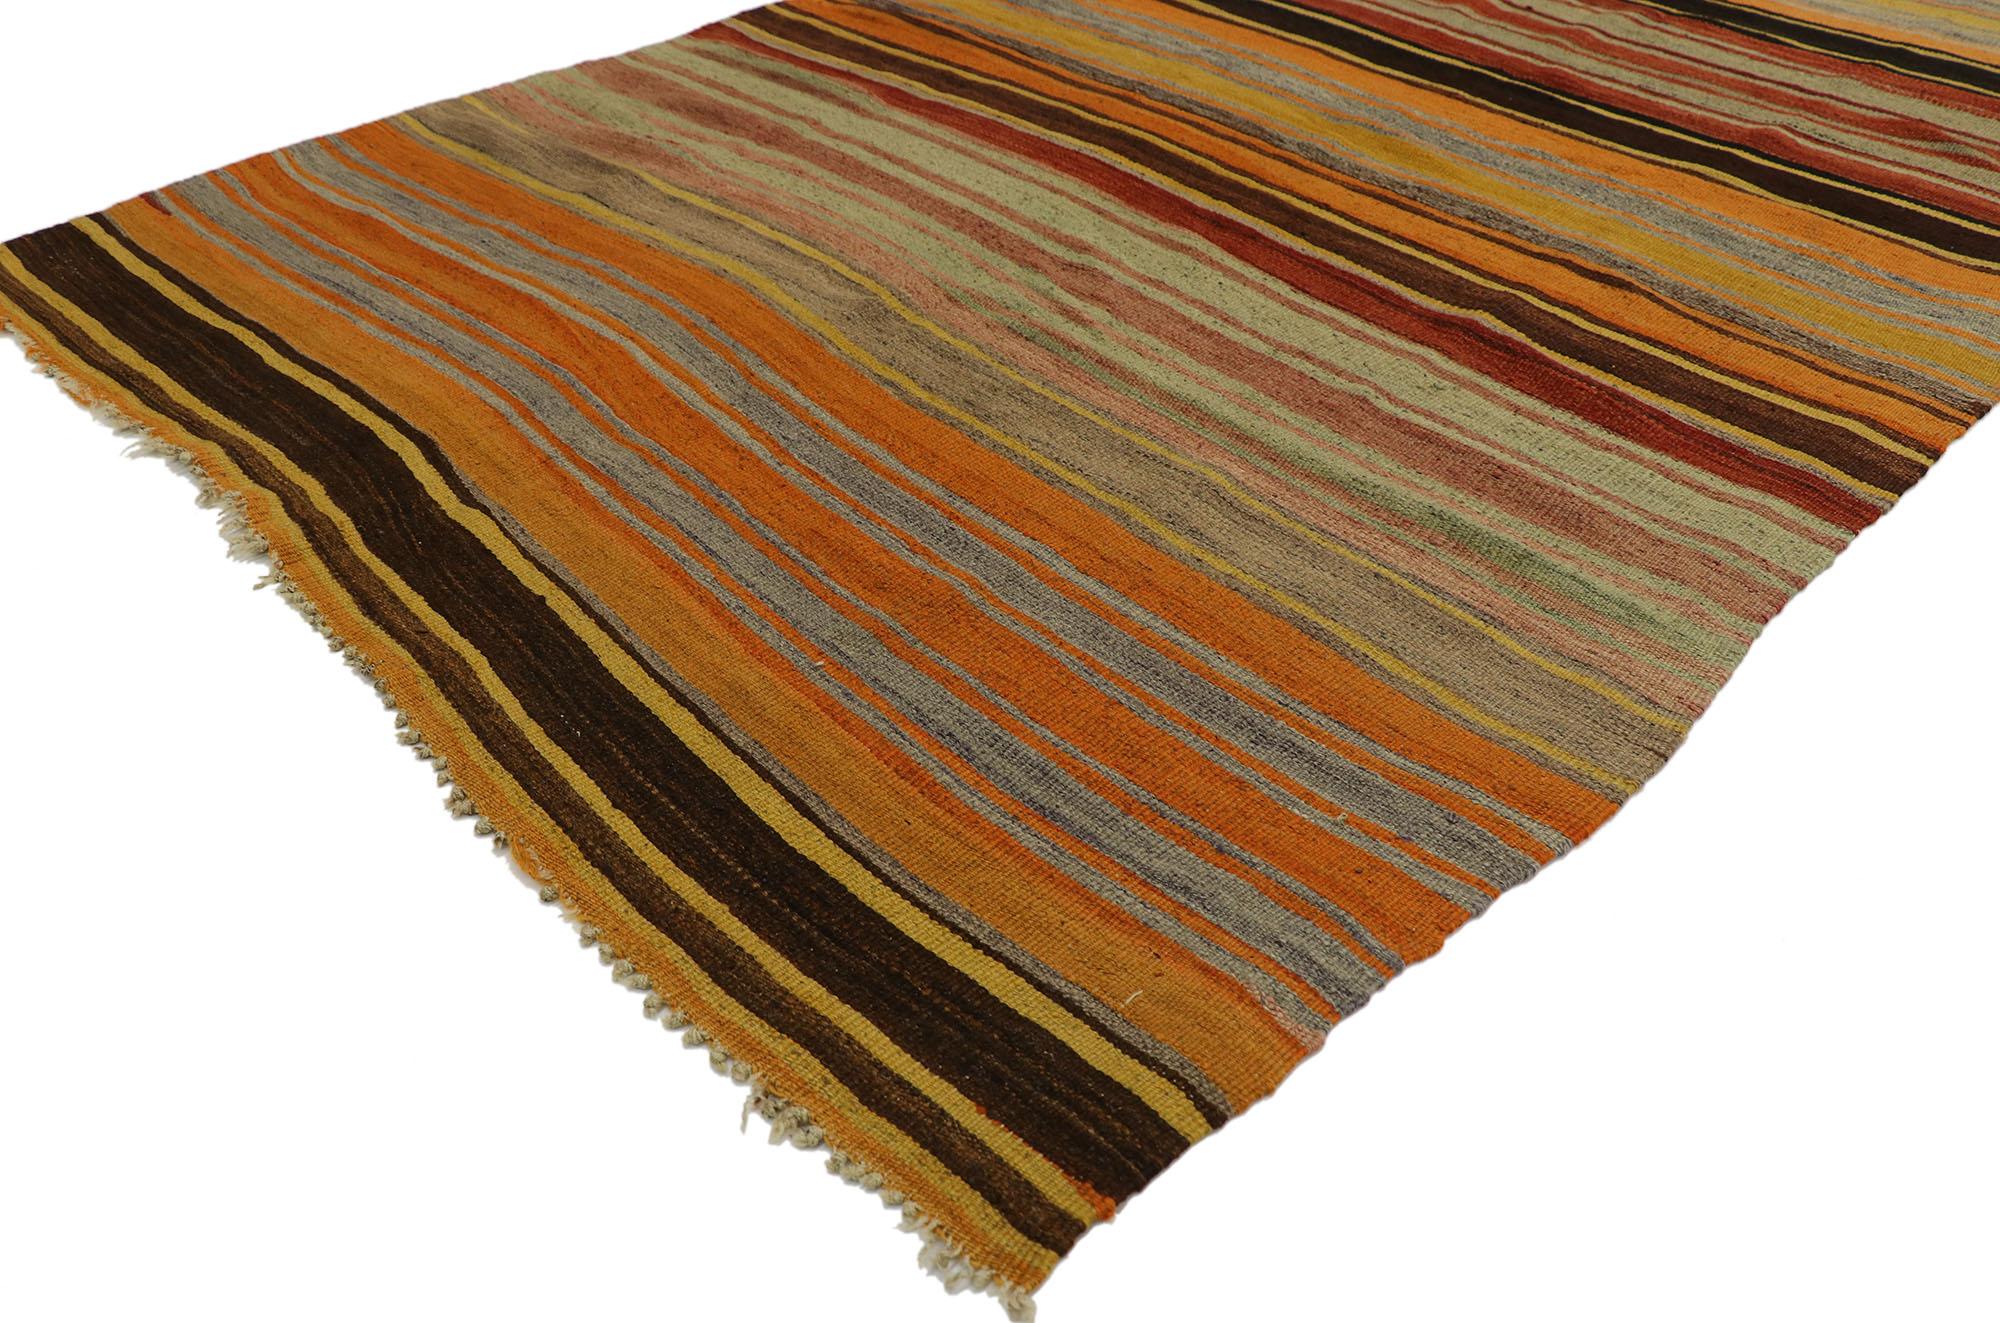 53117 Türkischer gestreifter Kilim-Teppich im Vintage-Stil. Mit seinen warmen Farbtönen und seiner robusten Schönheit schafft es dieser handgewebte, gestreifte Kelimteppich aus Wolle, zeitgenössische, moderne und traditionelle Designelemente